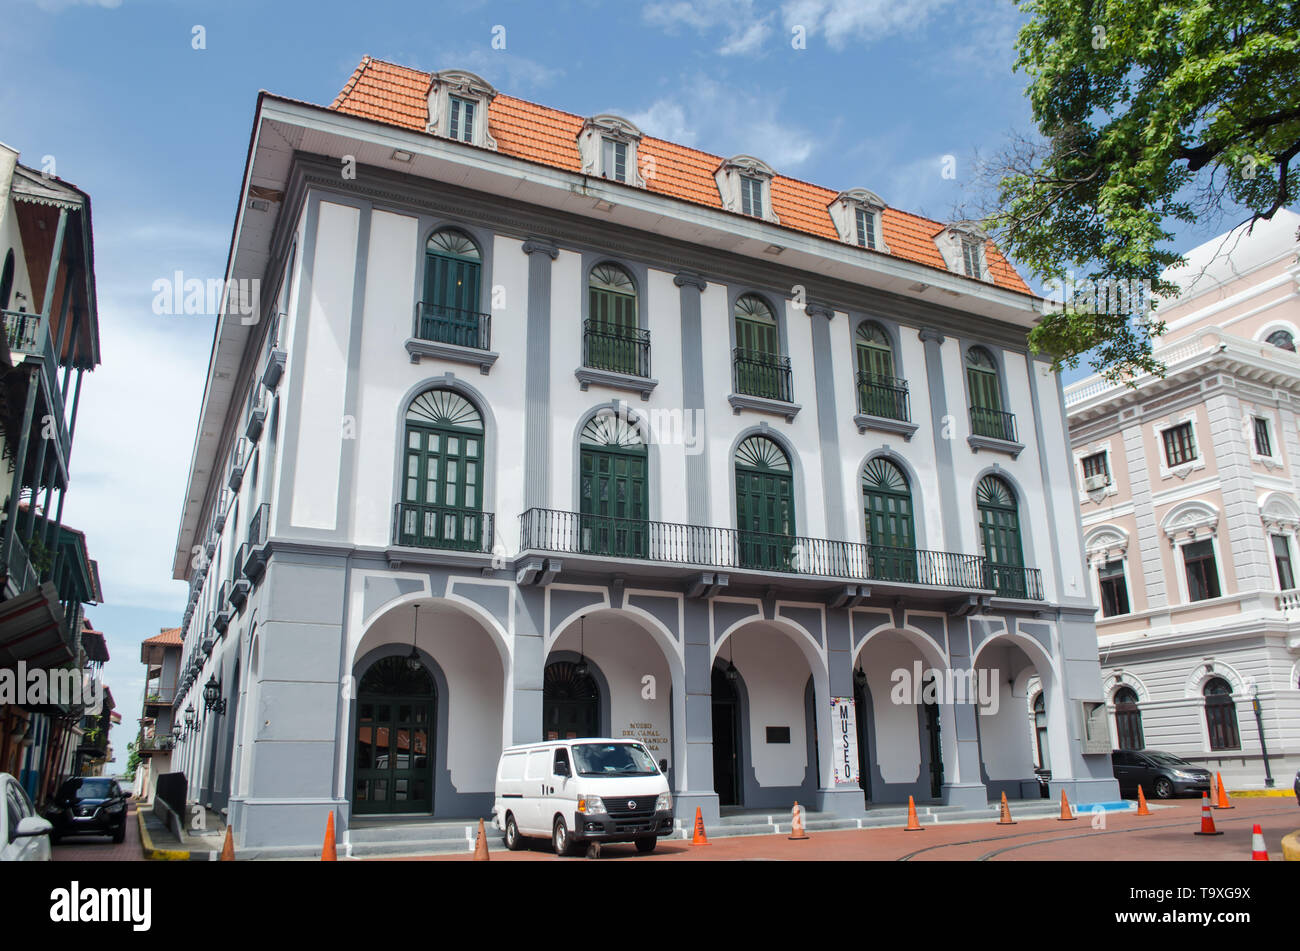 Der Panama Canal Museum, in einem wunderschönen renovierten Gebäude in der Altstadt von Panama City auch als Casco Viejo bekannt ist. Stockfoto